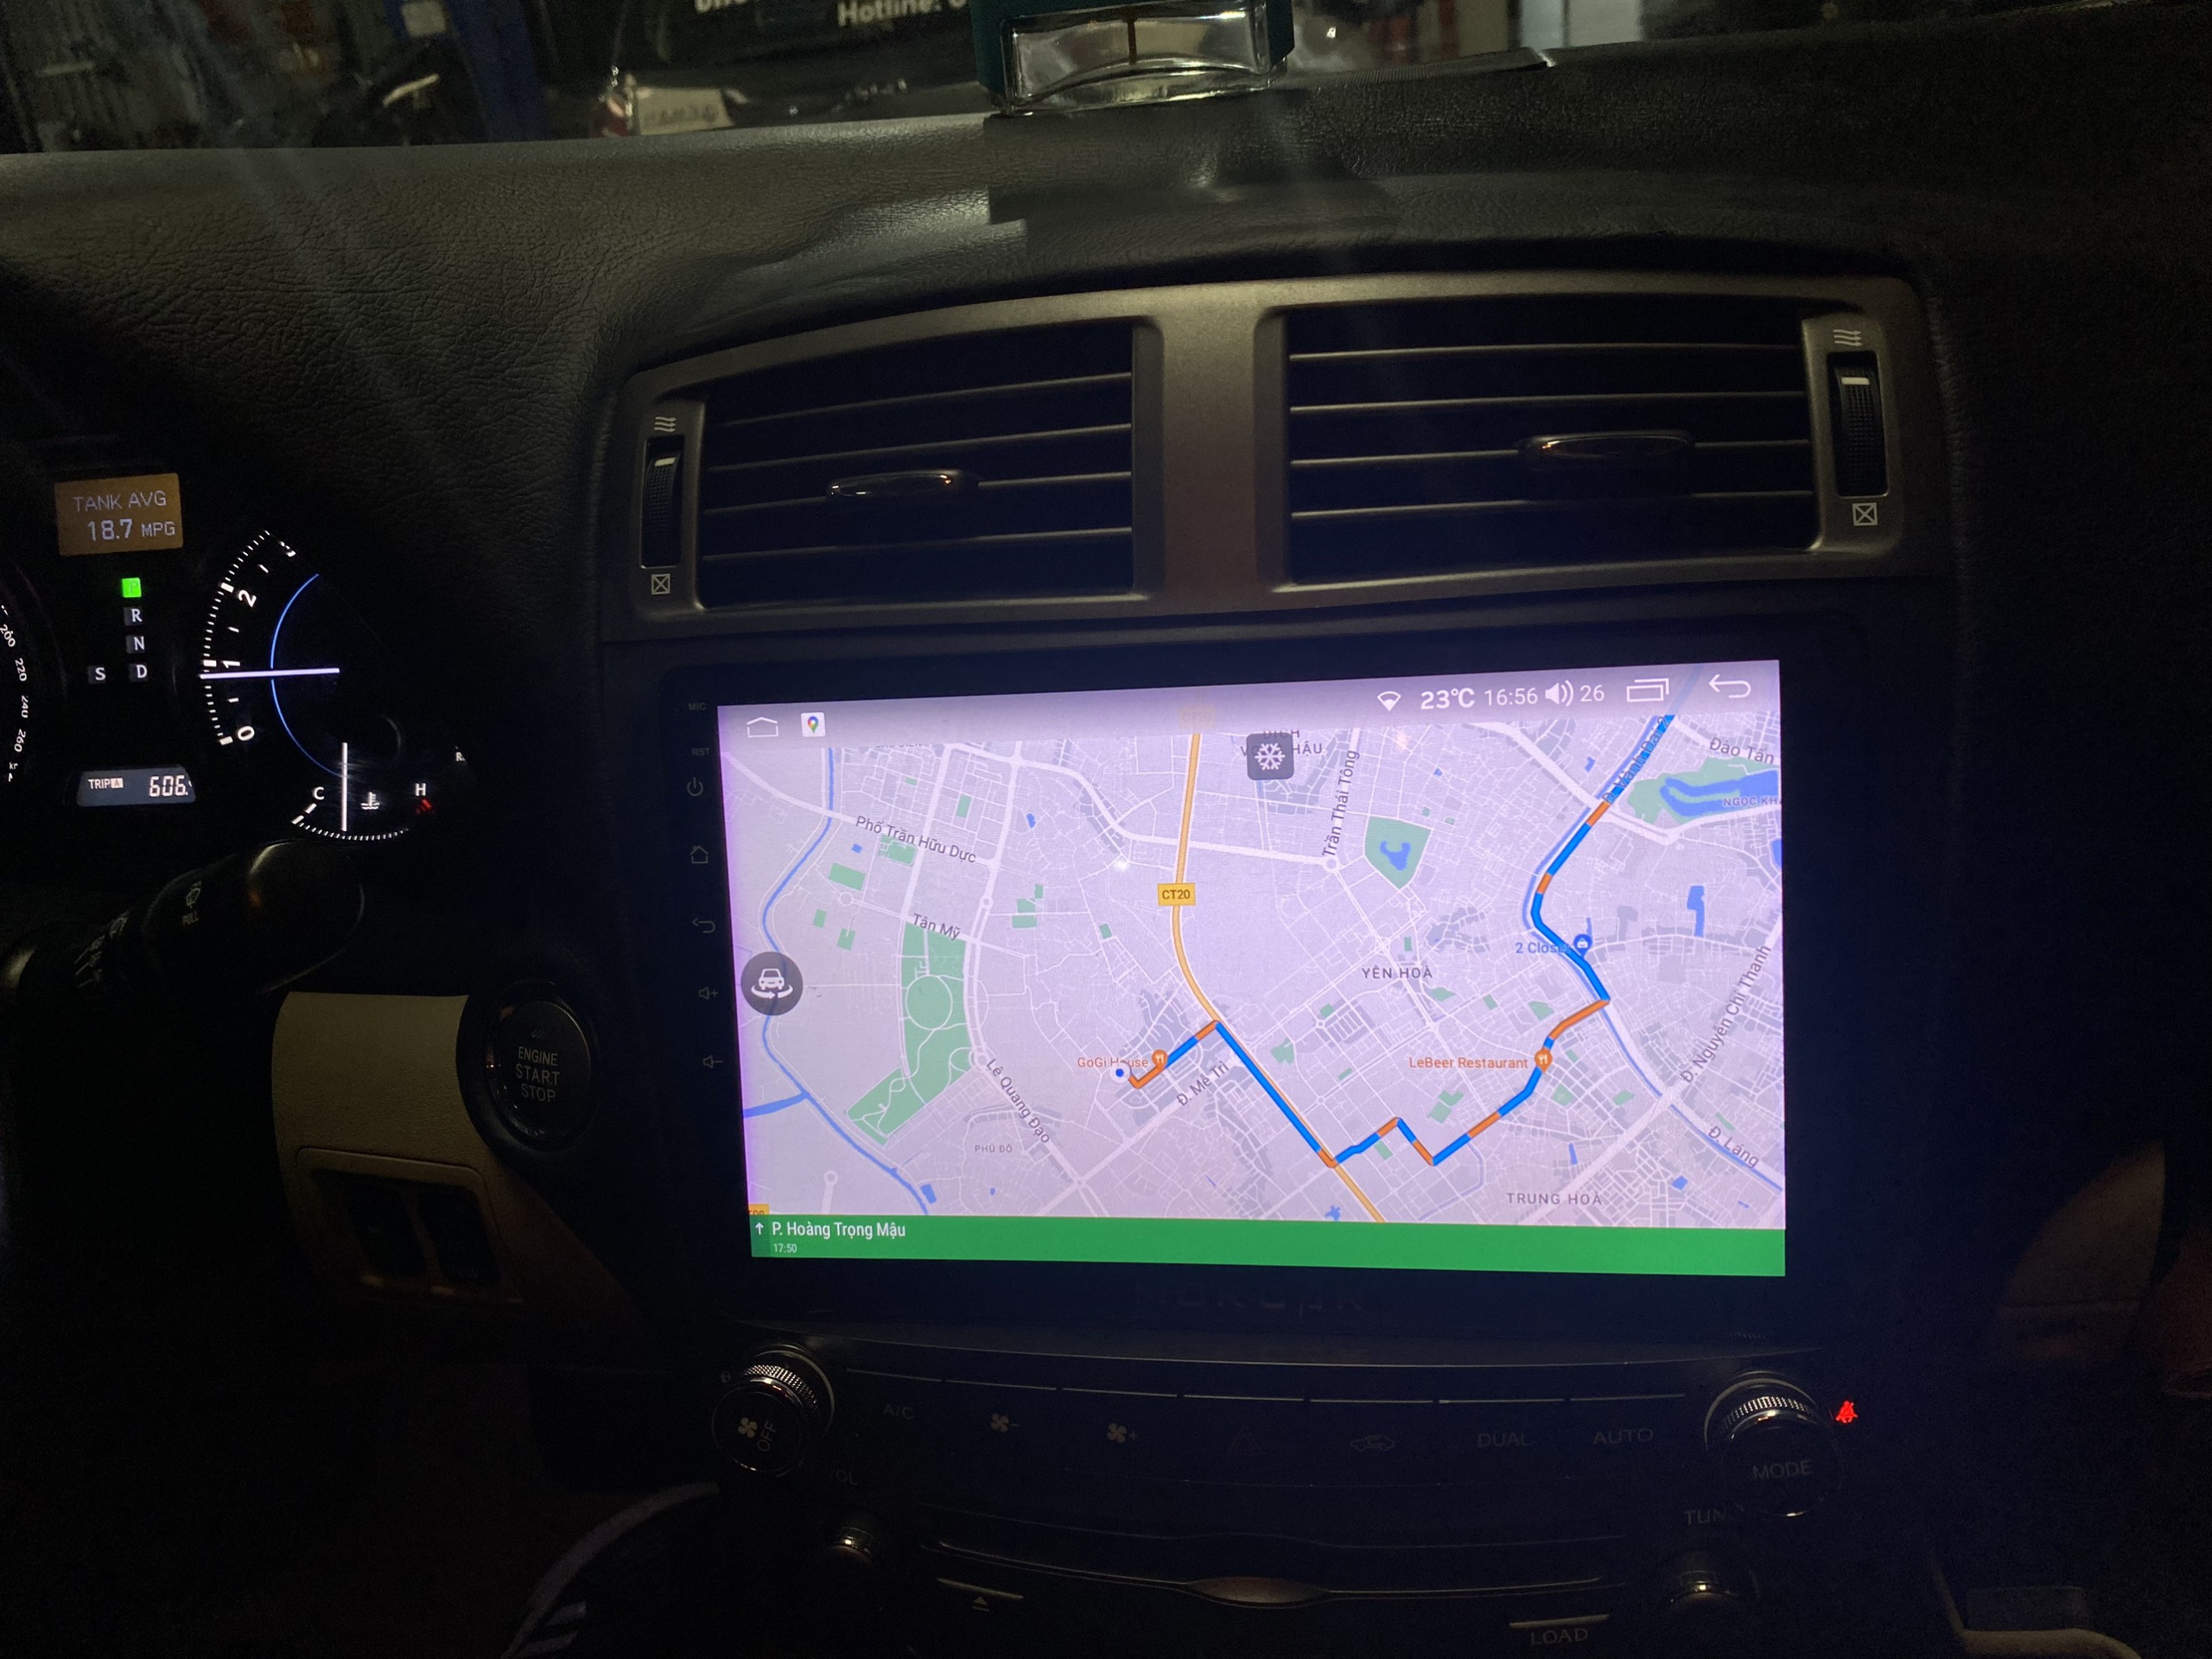 Màn hình Android tích hợp camera 360 trên Lexus IS 205-2013